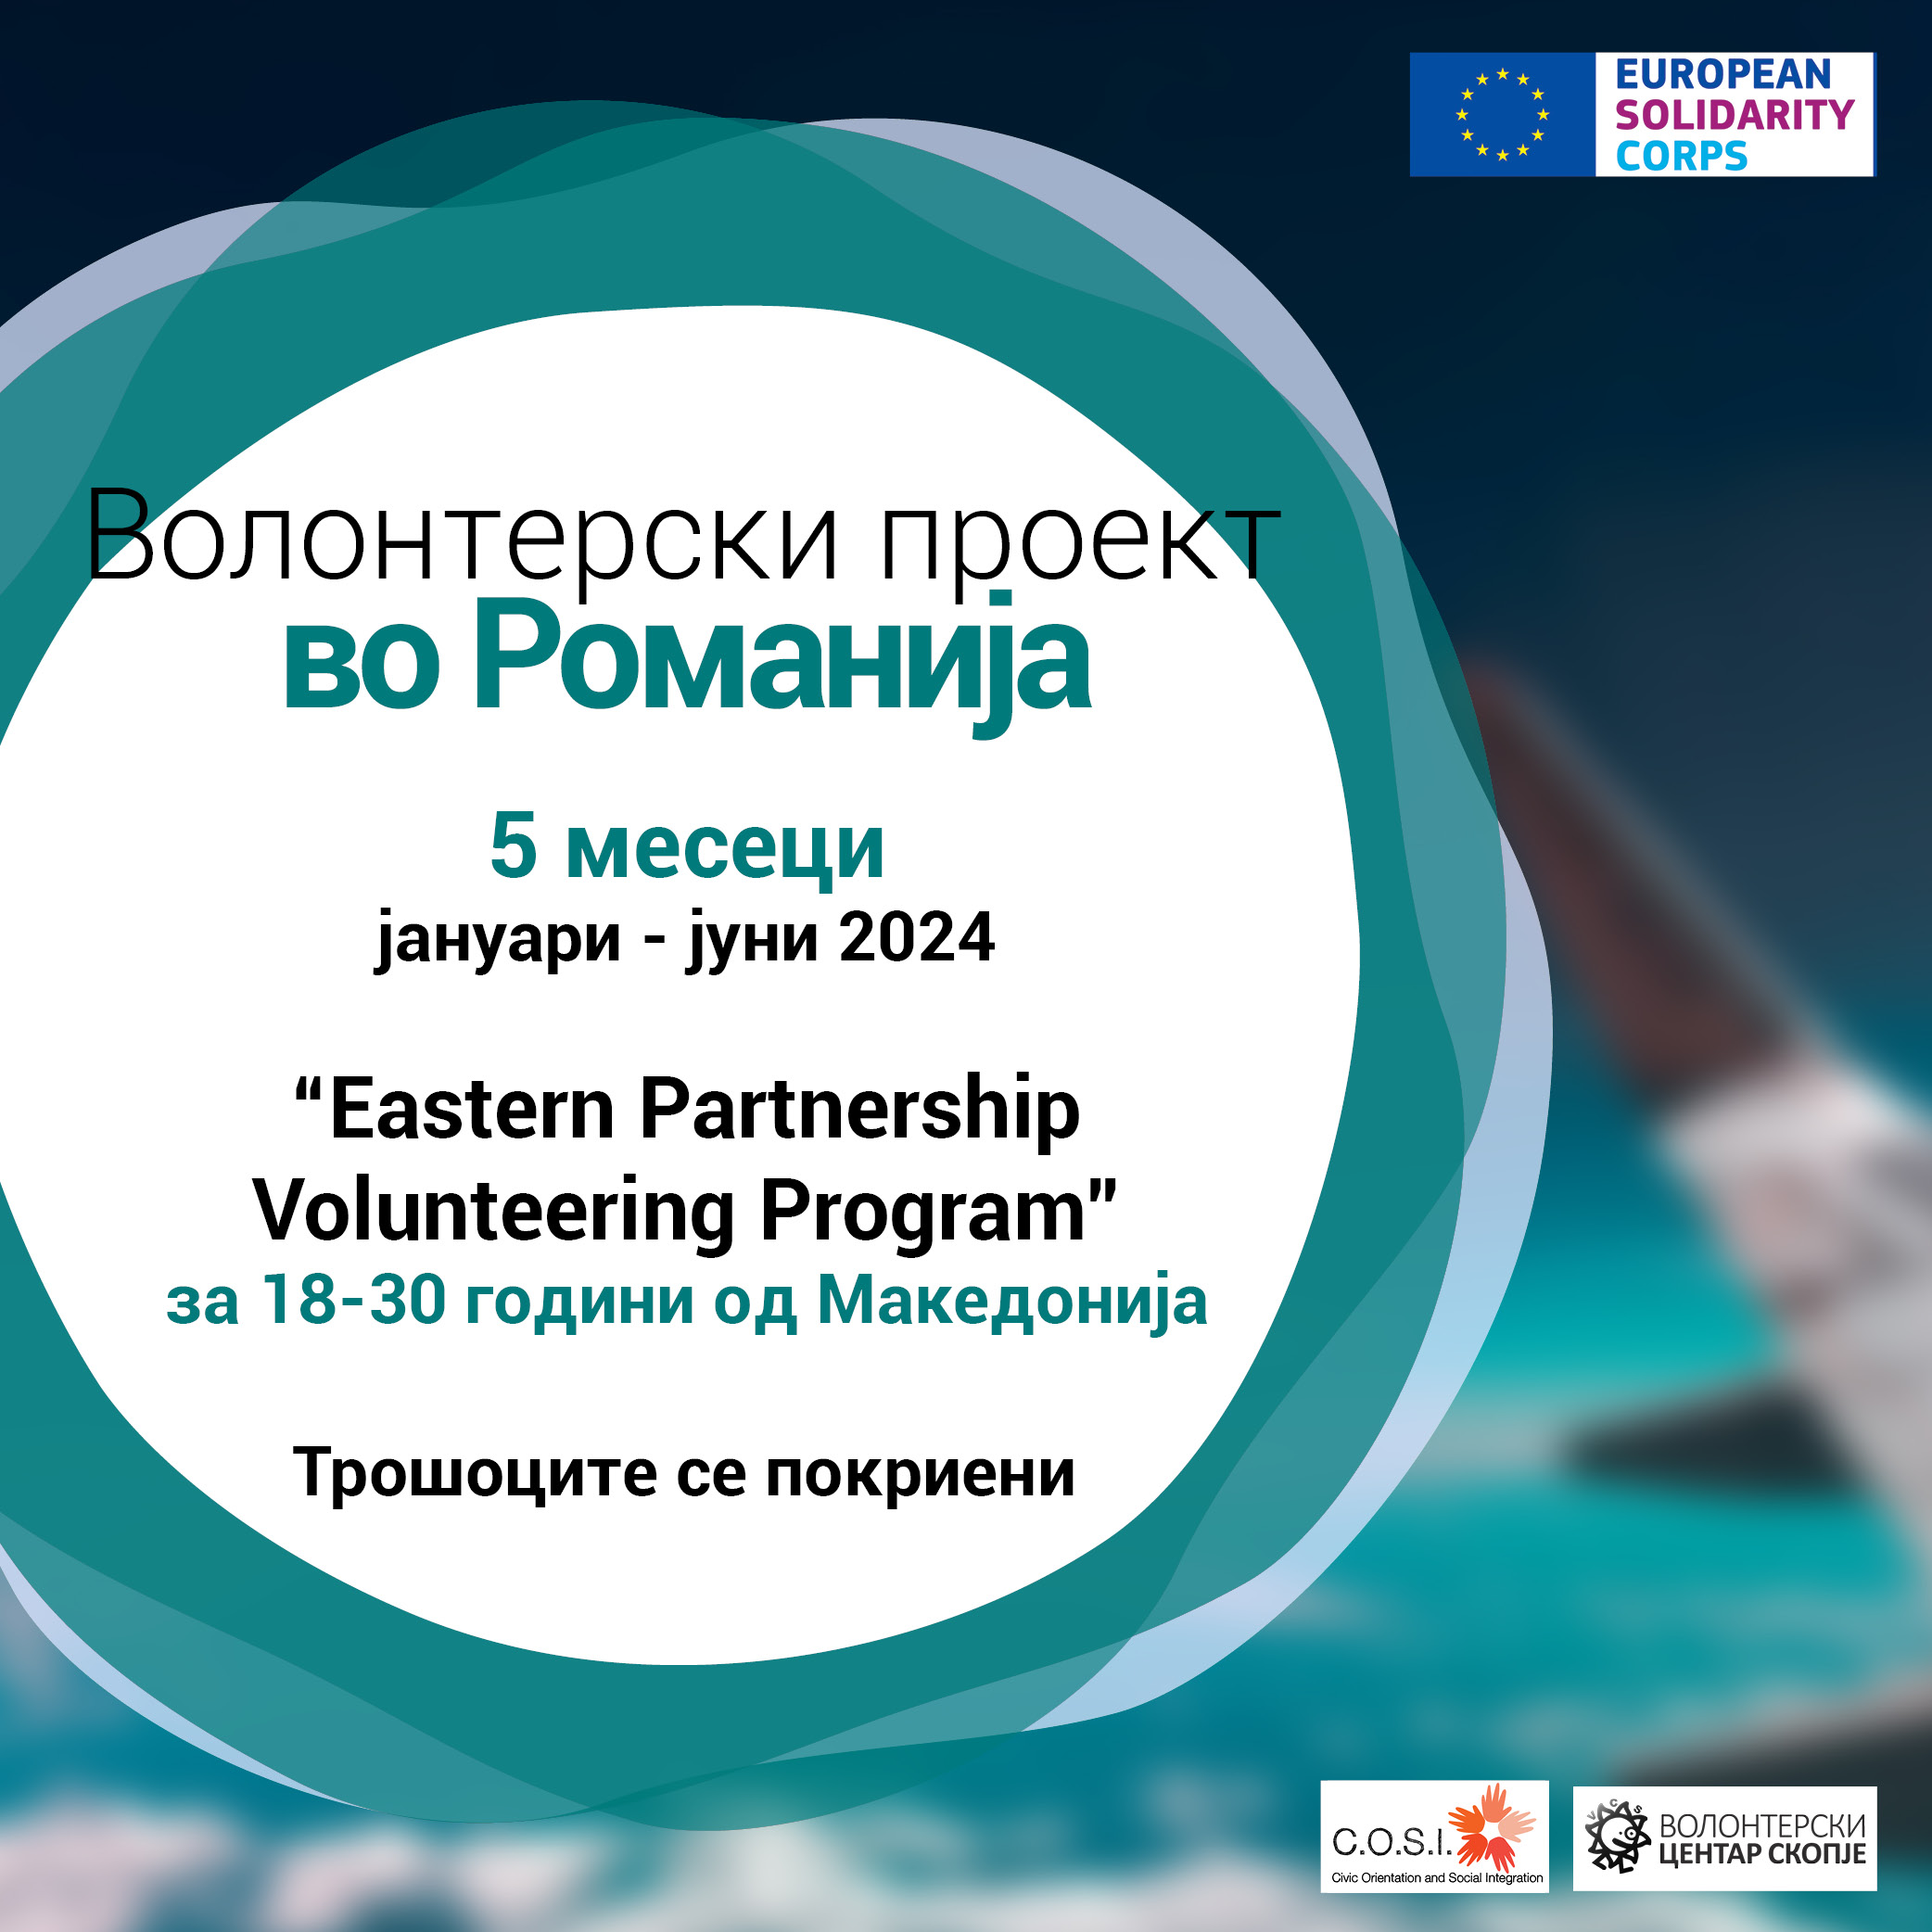 You are currently viewing Повик за волонтери во Романија!